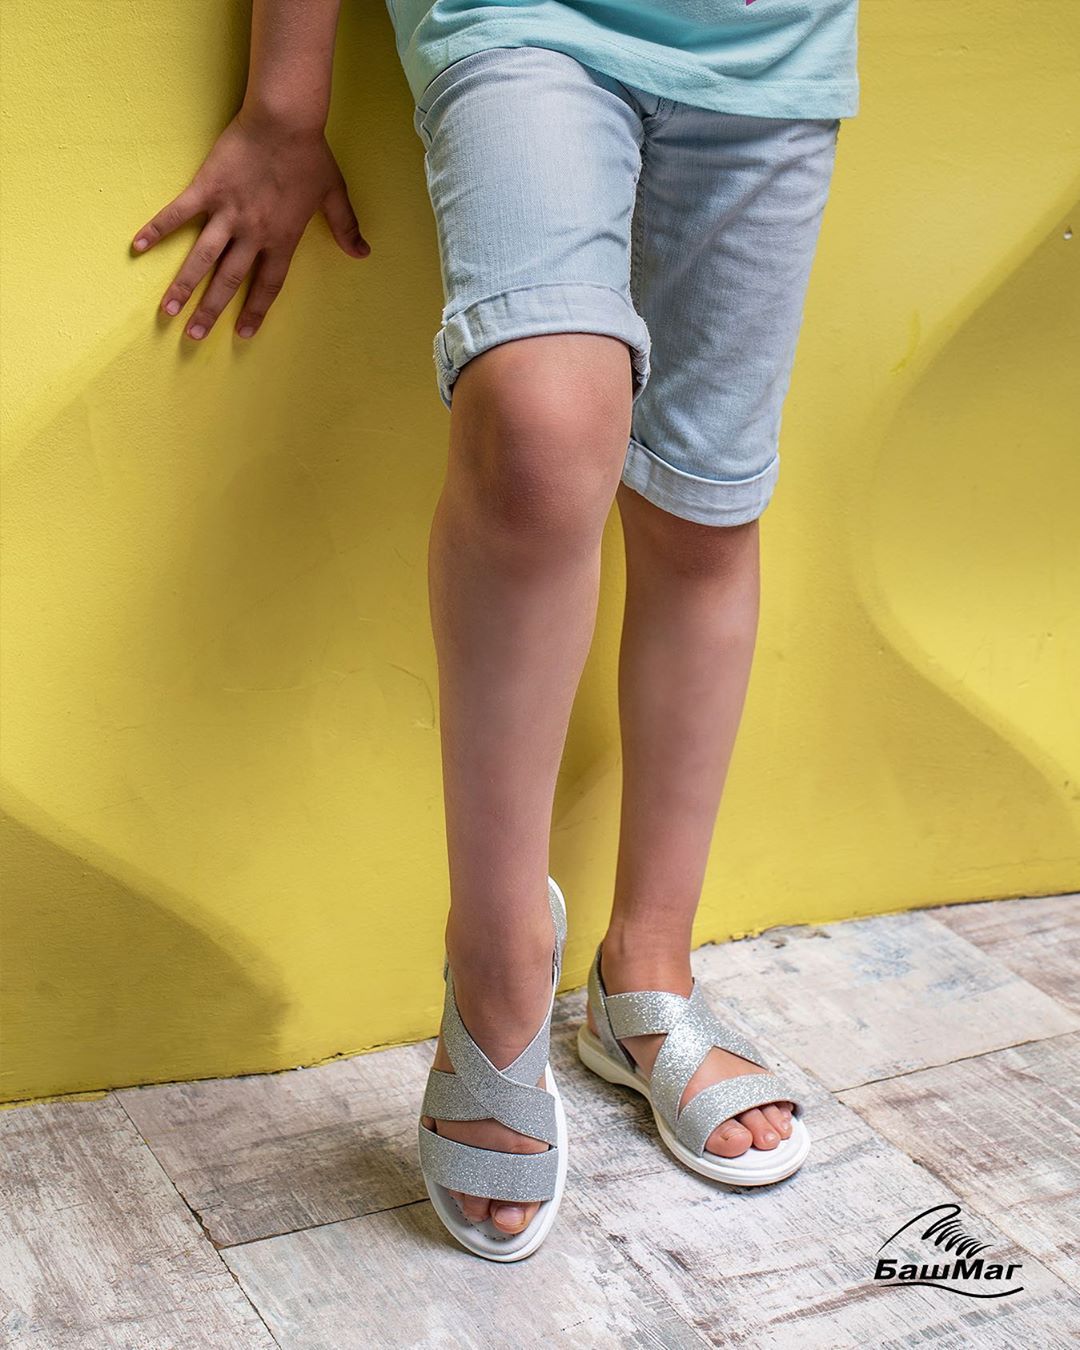 БашМаг - 🥳Оторваться по полной и вдоволь насладиться летними прогулками позволят любимые «резинки» от бренда #antilopa - самая удобная и незаменимая обувь для ежедневных подвижных прогулок!
⠀
Мягкие...